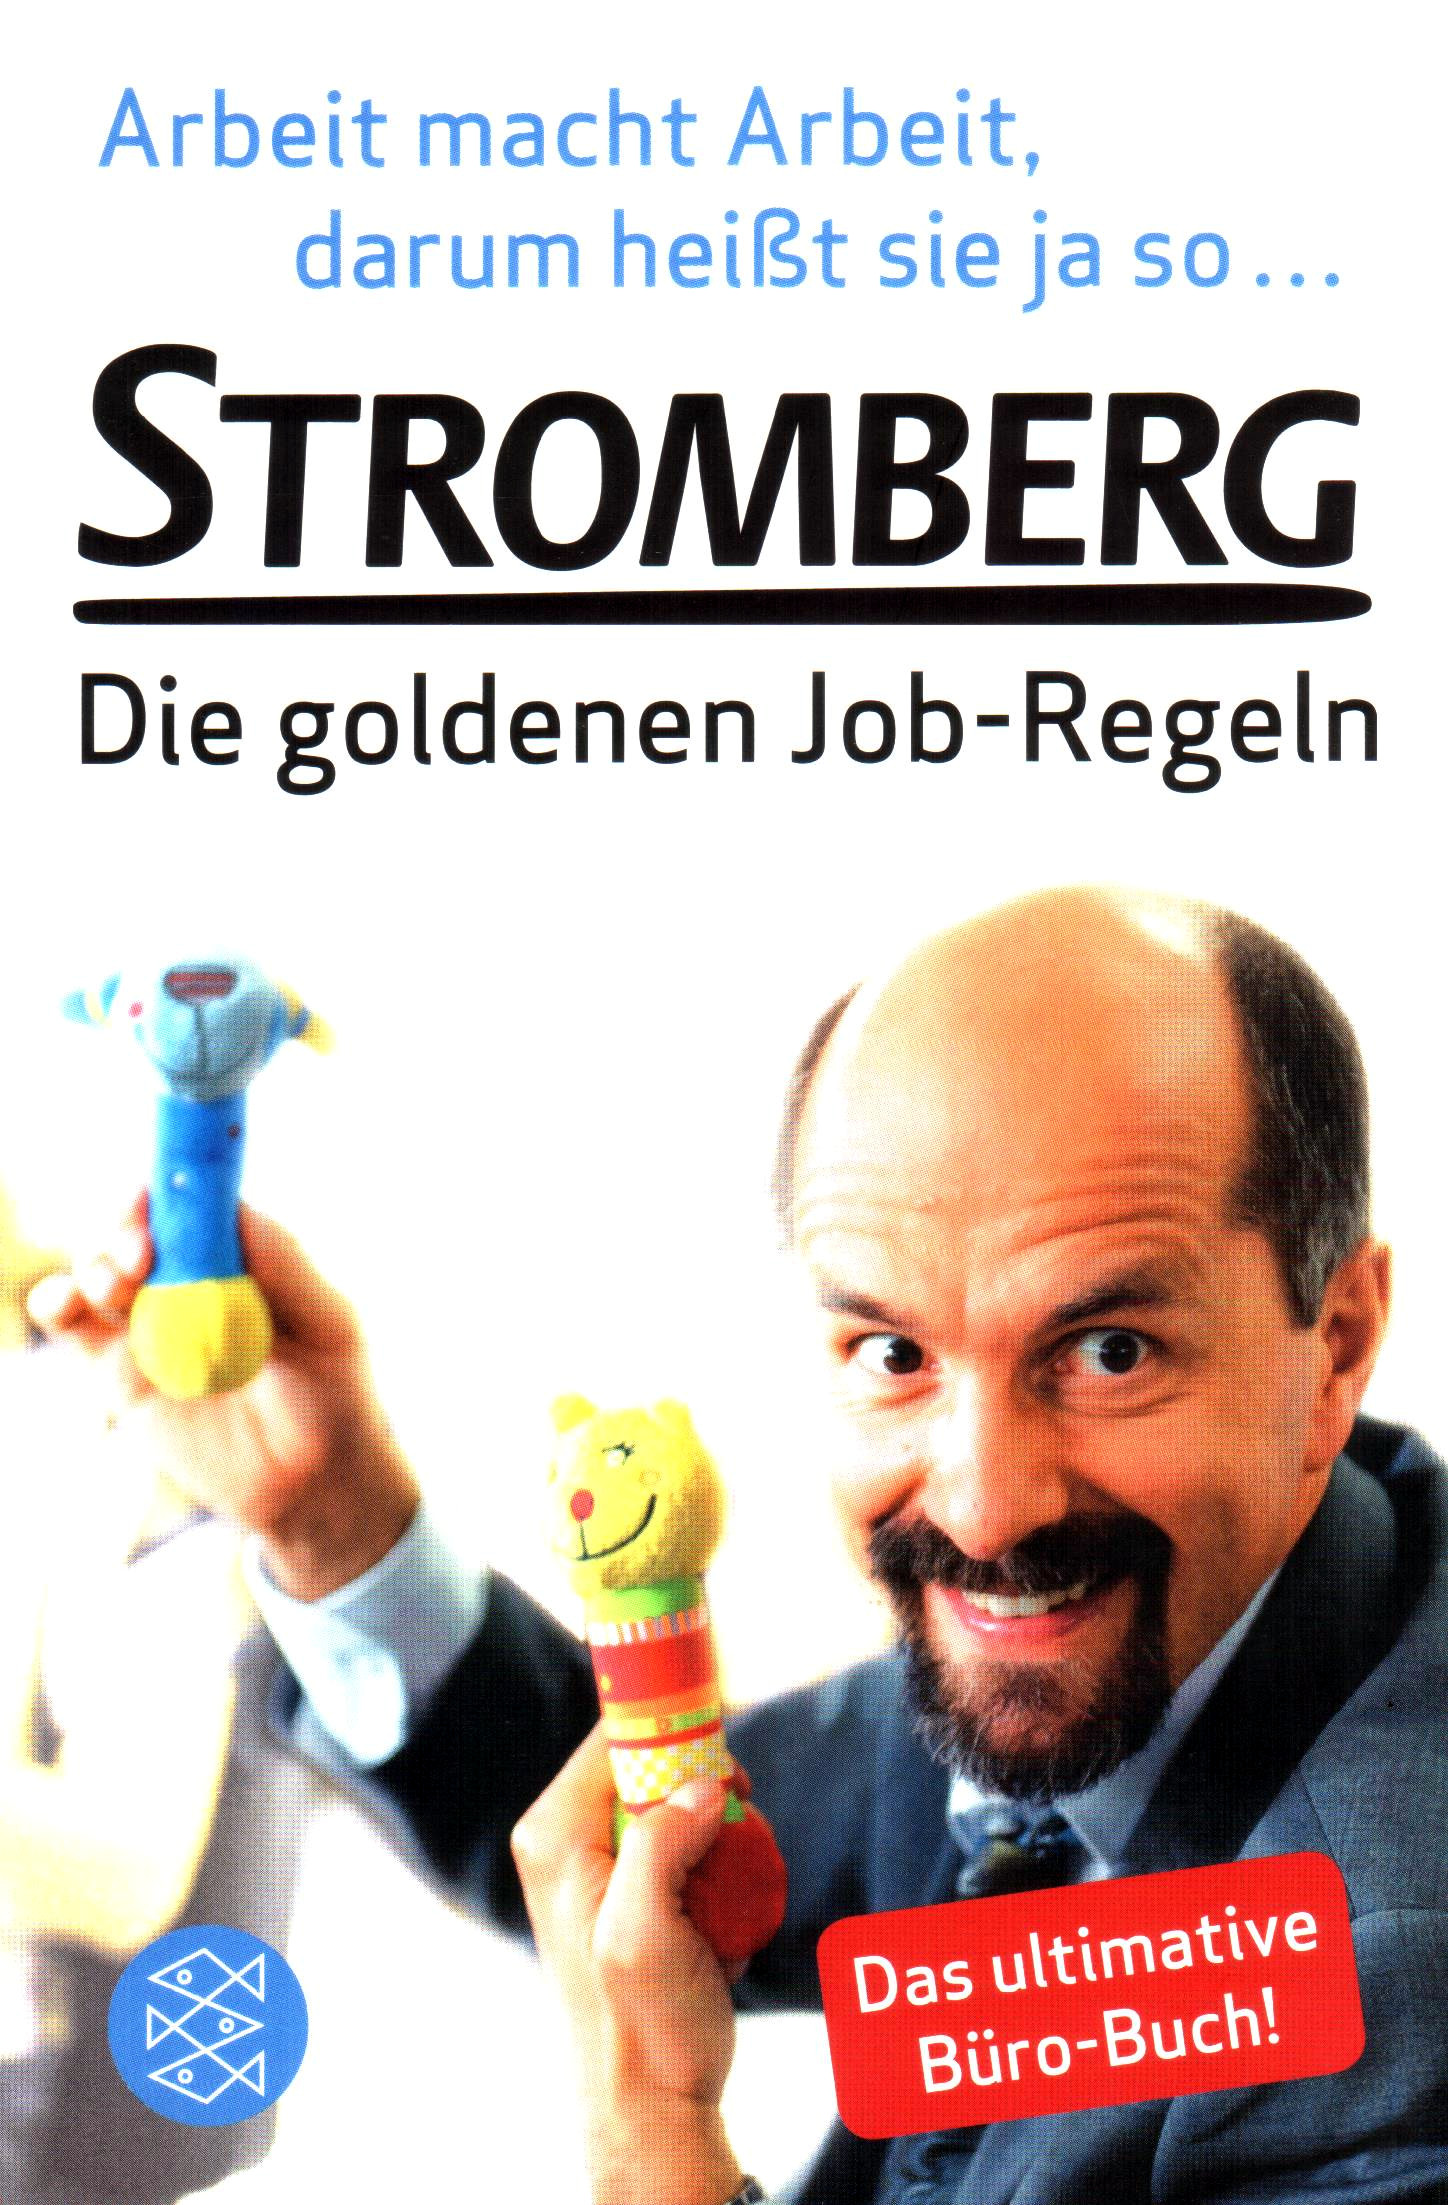 STROMBERG – Die goldenen Regeln – Arbeit macht Arbeit, darum heißt sie ja so …